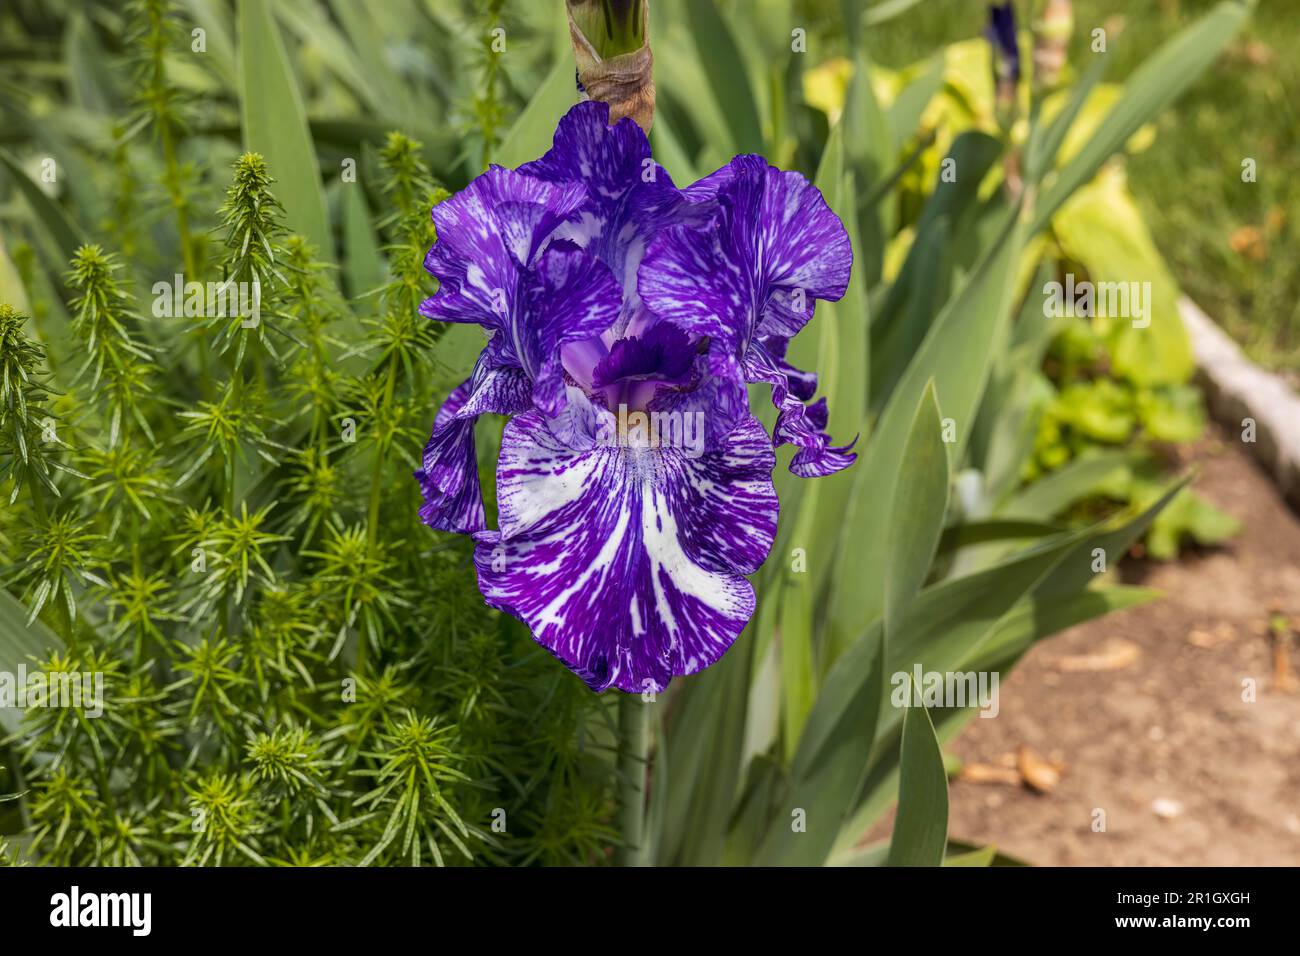 Sobald diese Blaubärtige Irisblüte sich öffnet, wird die Blume innerhalb eines Tages oder so violett Stockfoto